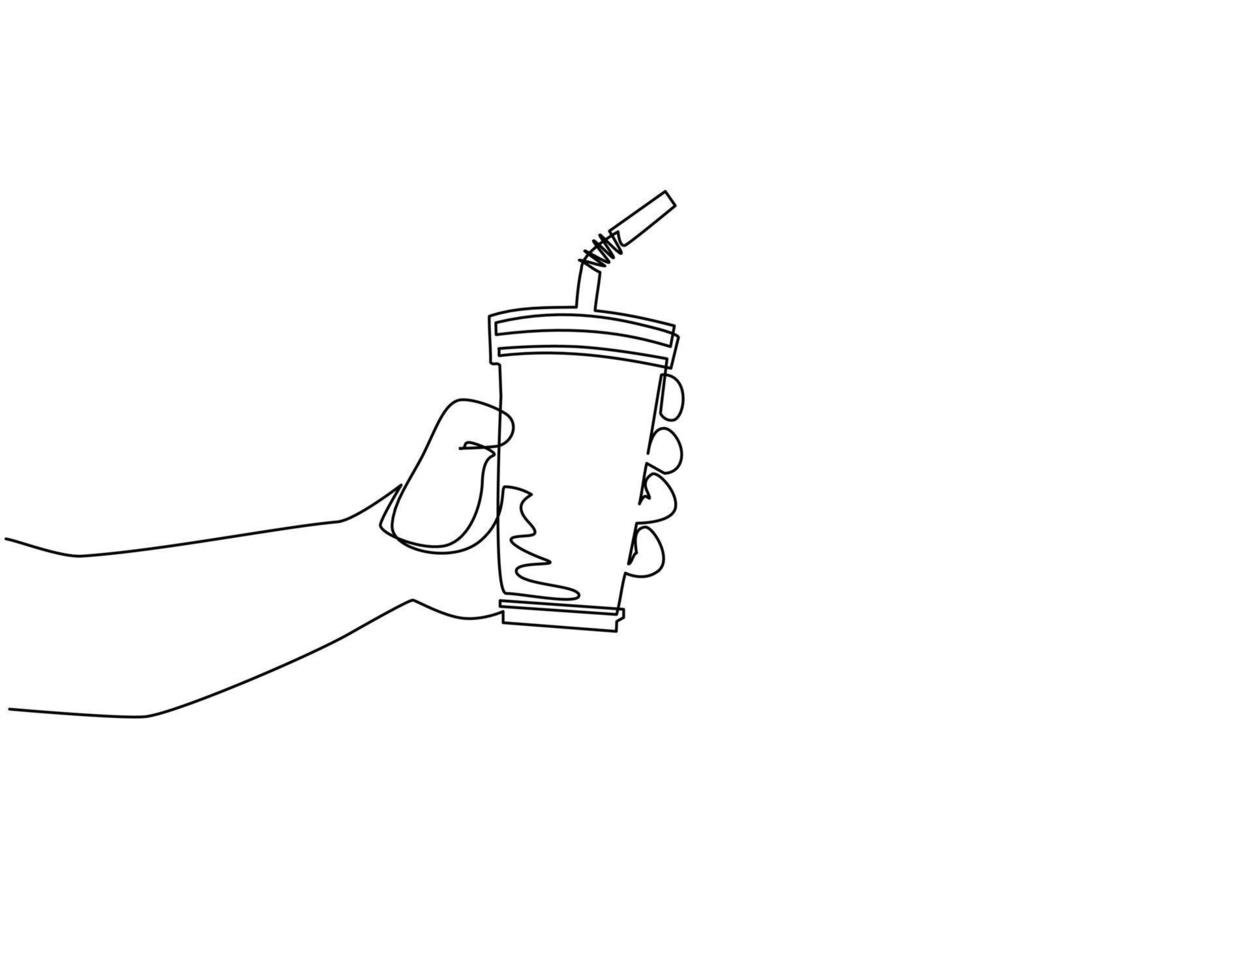 vaso de papel de mano de dibujo de una sola línea. mano masculina sosteniendo un vaso de papel con paja sobre fondo blanco. para el menú de bebidas del restaurante o cafetería. ilustración de vector de diseño de dibujo de línea continua moderna